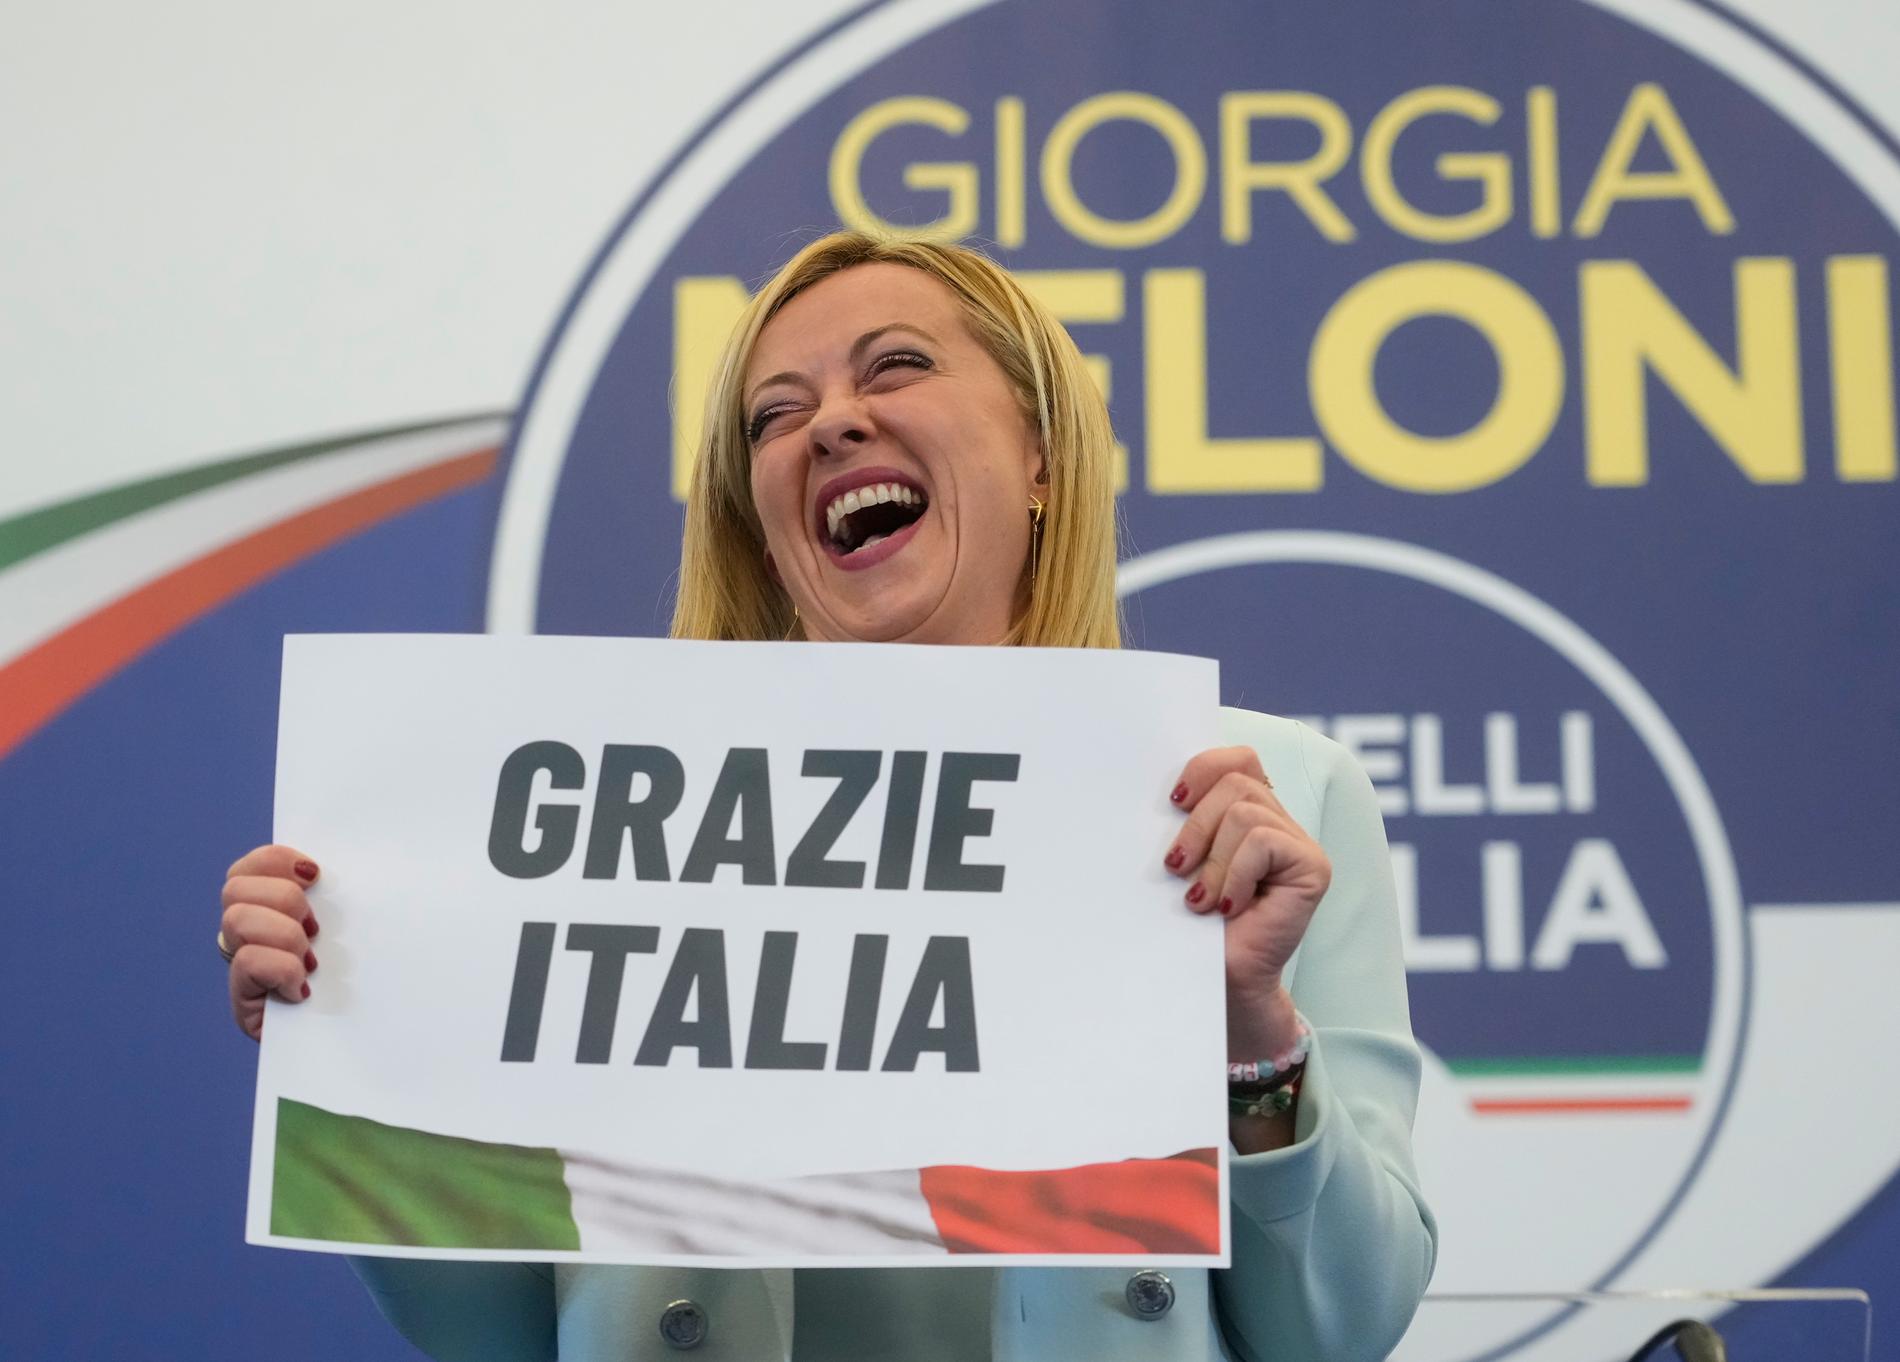 Tack Italien! säger Giorgia Meloni sedan hennes ytterhögerparti Italiens bröder blivit klart störst i parlamentsvalet i söndags.